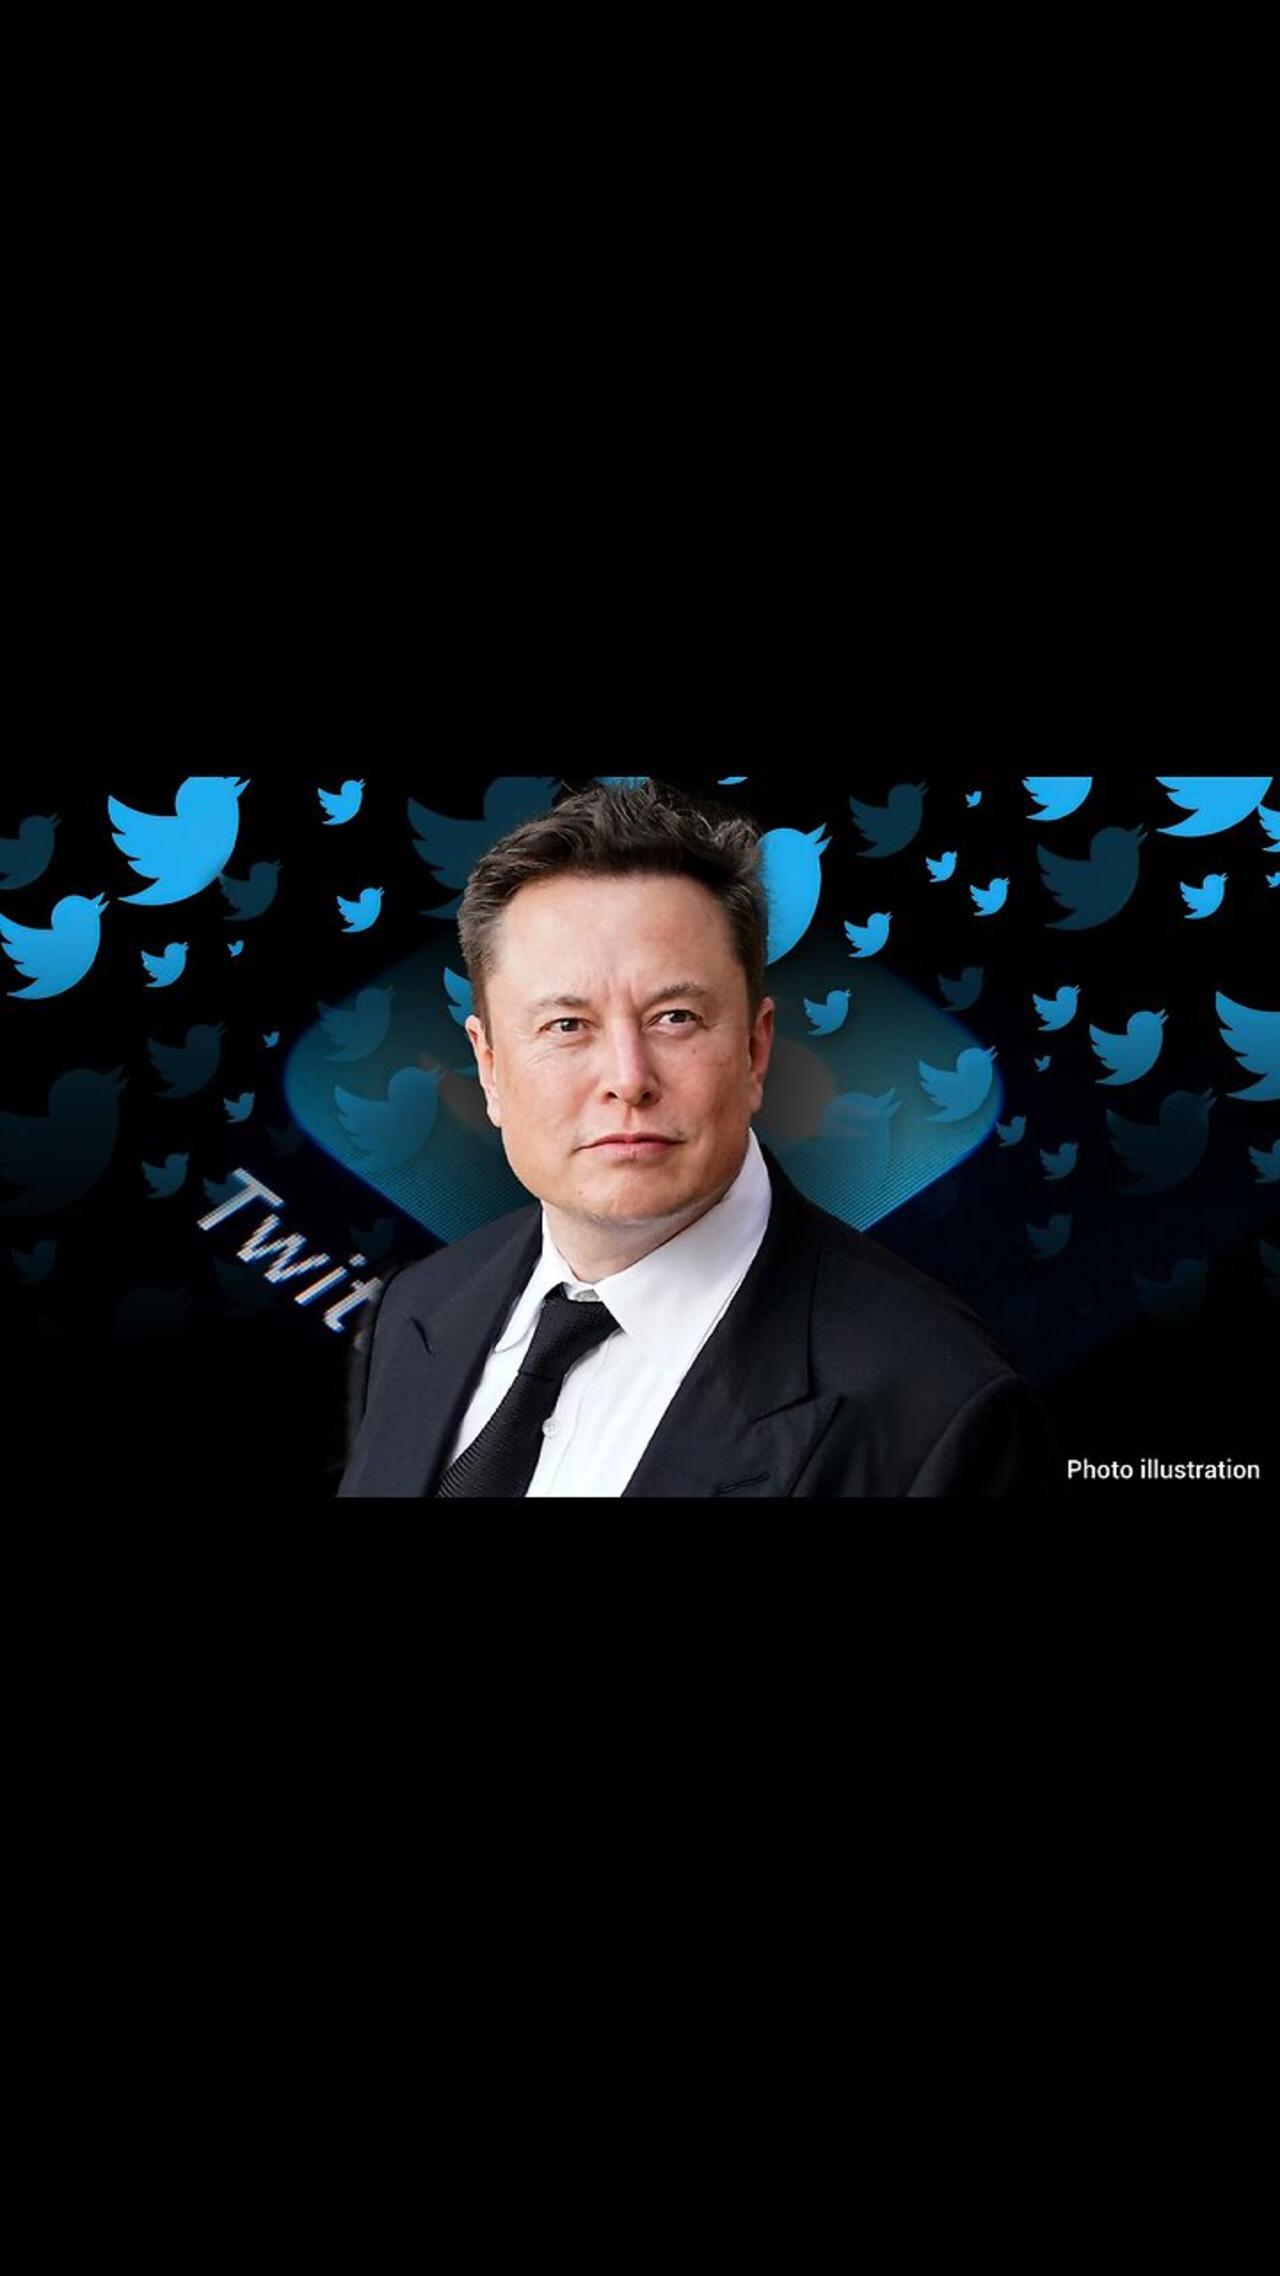 #Elon Musk Motivation